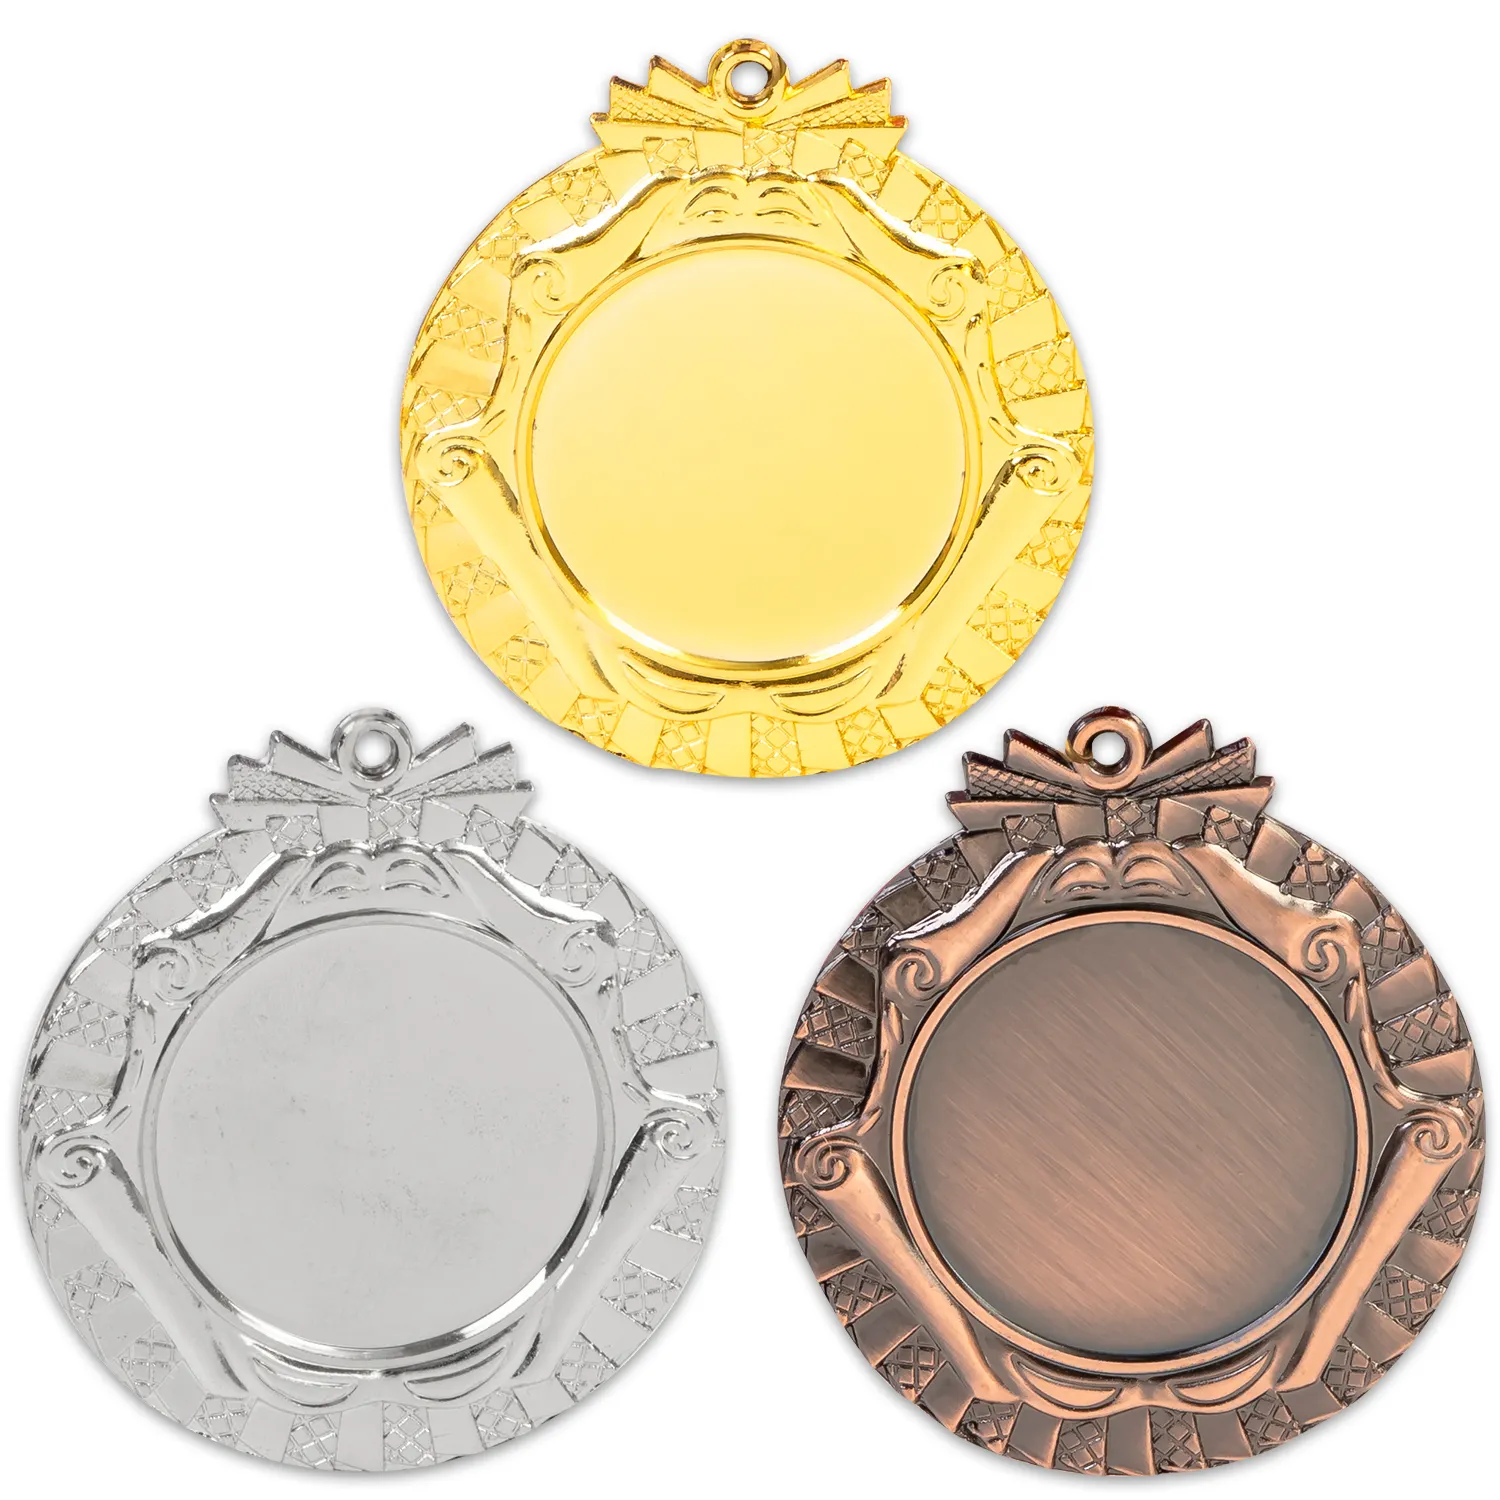 Medallas de desafío personalizadas de fábrica al por mayor, medallas deportivas de maratón de oro, plata y cobre de alta calidad